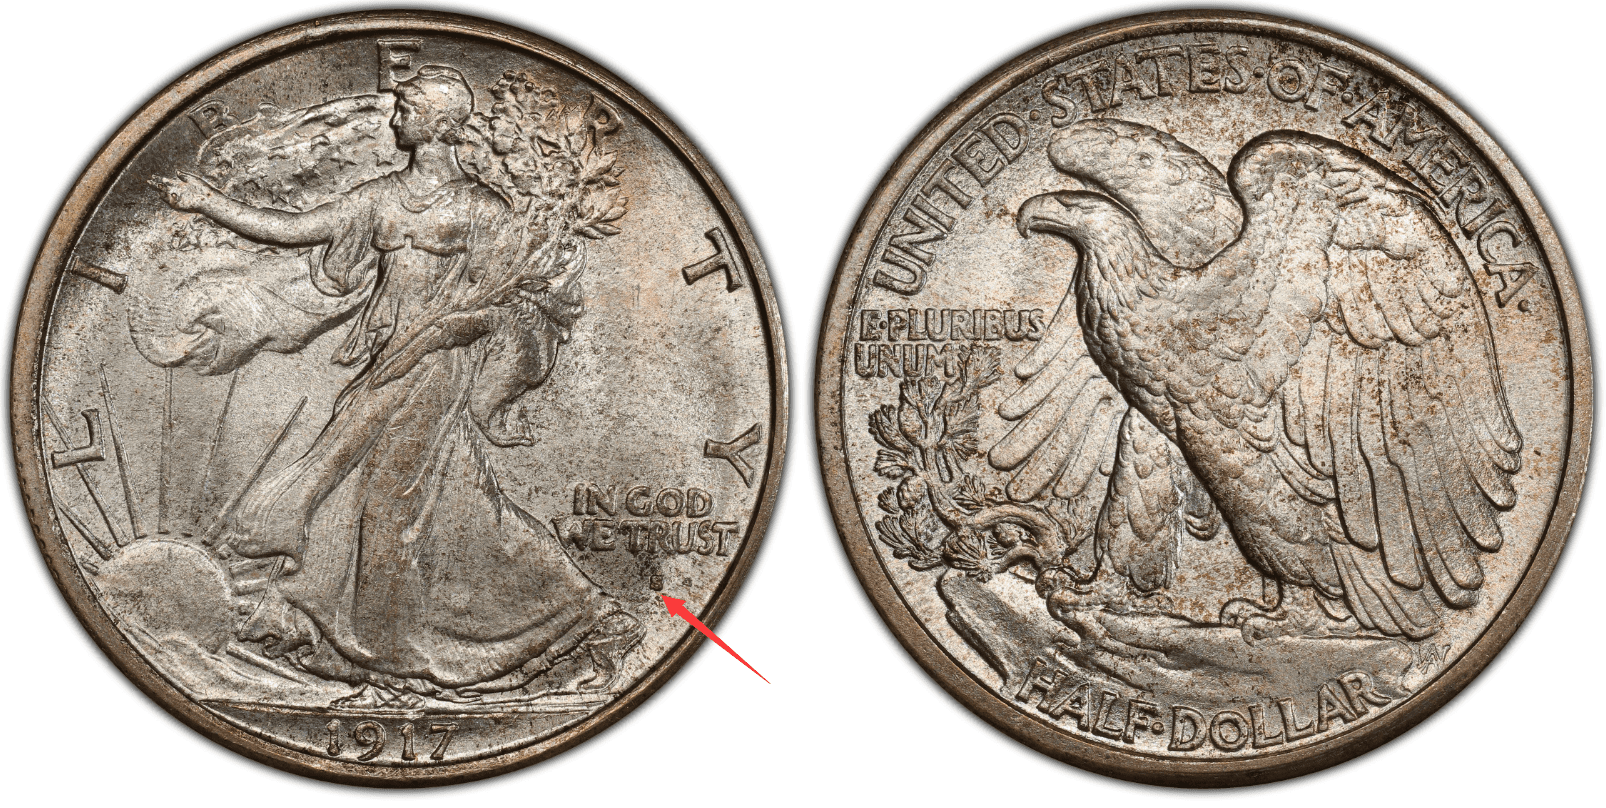 1917 S half-dollar, mint mark on the obverse